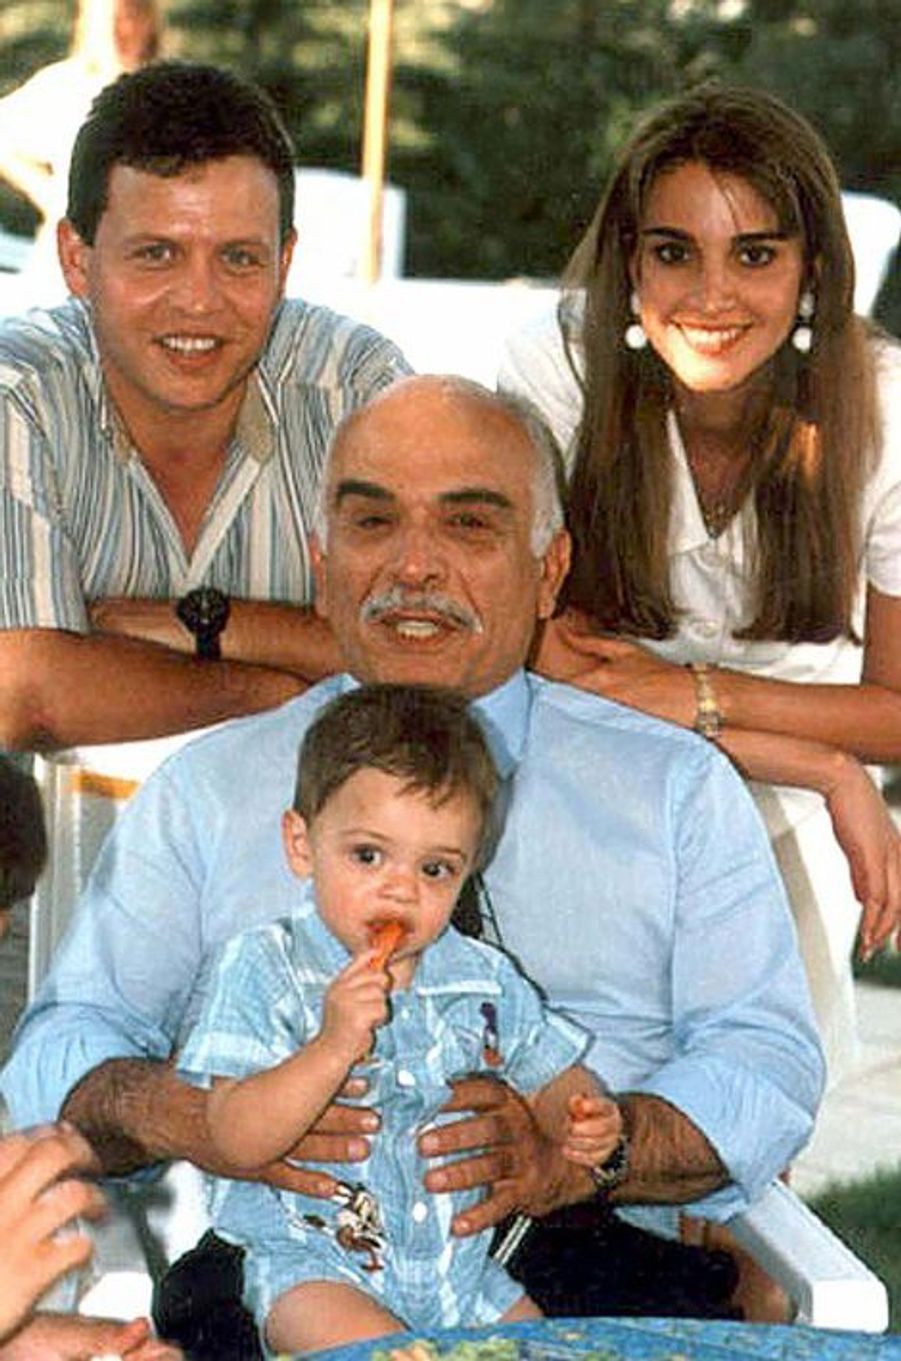 Le Fils Du Roi Abdallah Ii Et De La Reine Rania En Photos Le Prince Hussein De Jordanie A 21 Ans